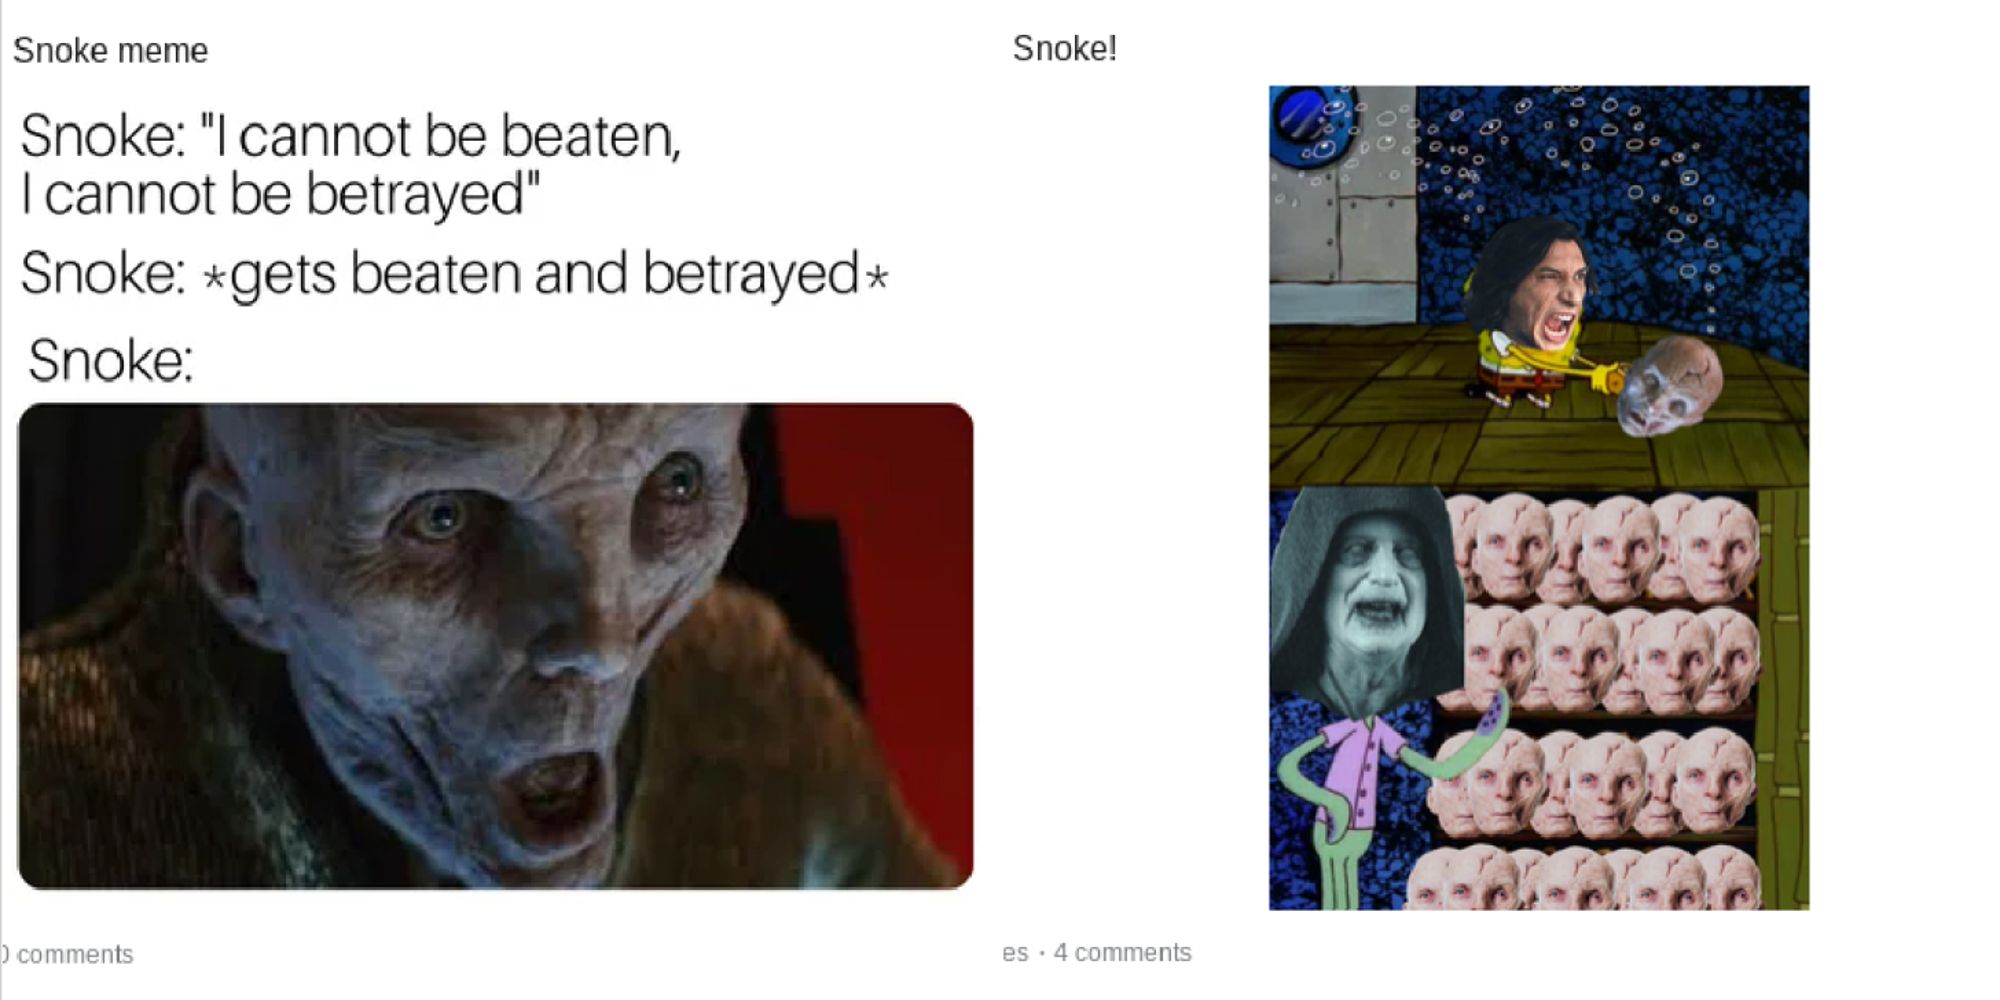 Split image of Snoke character memes